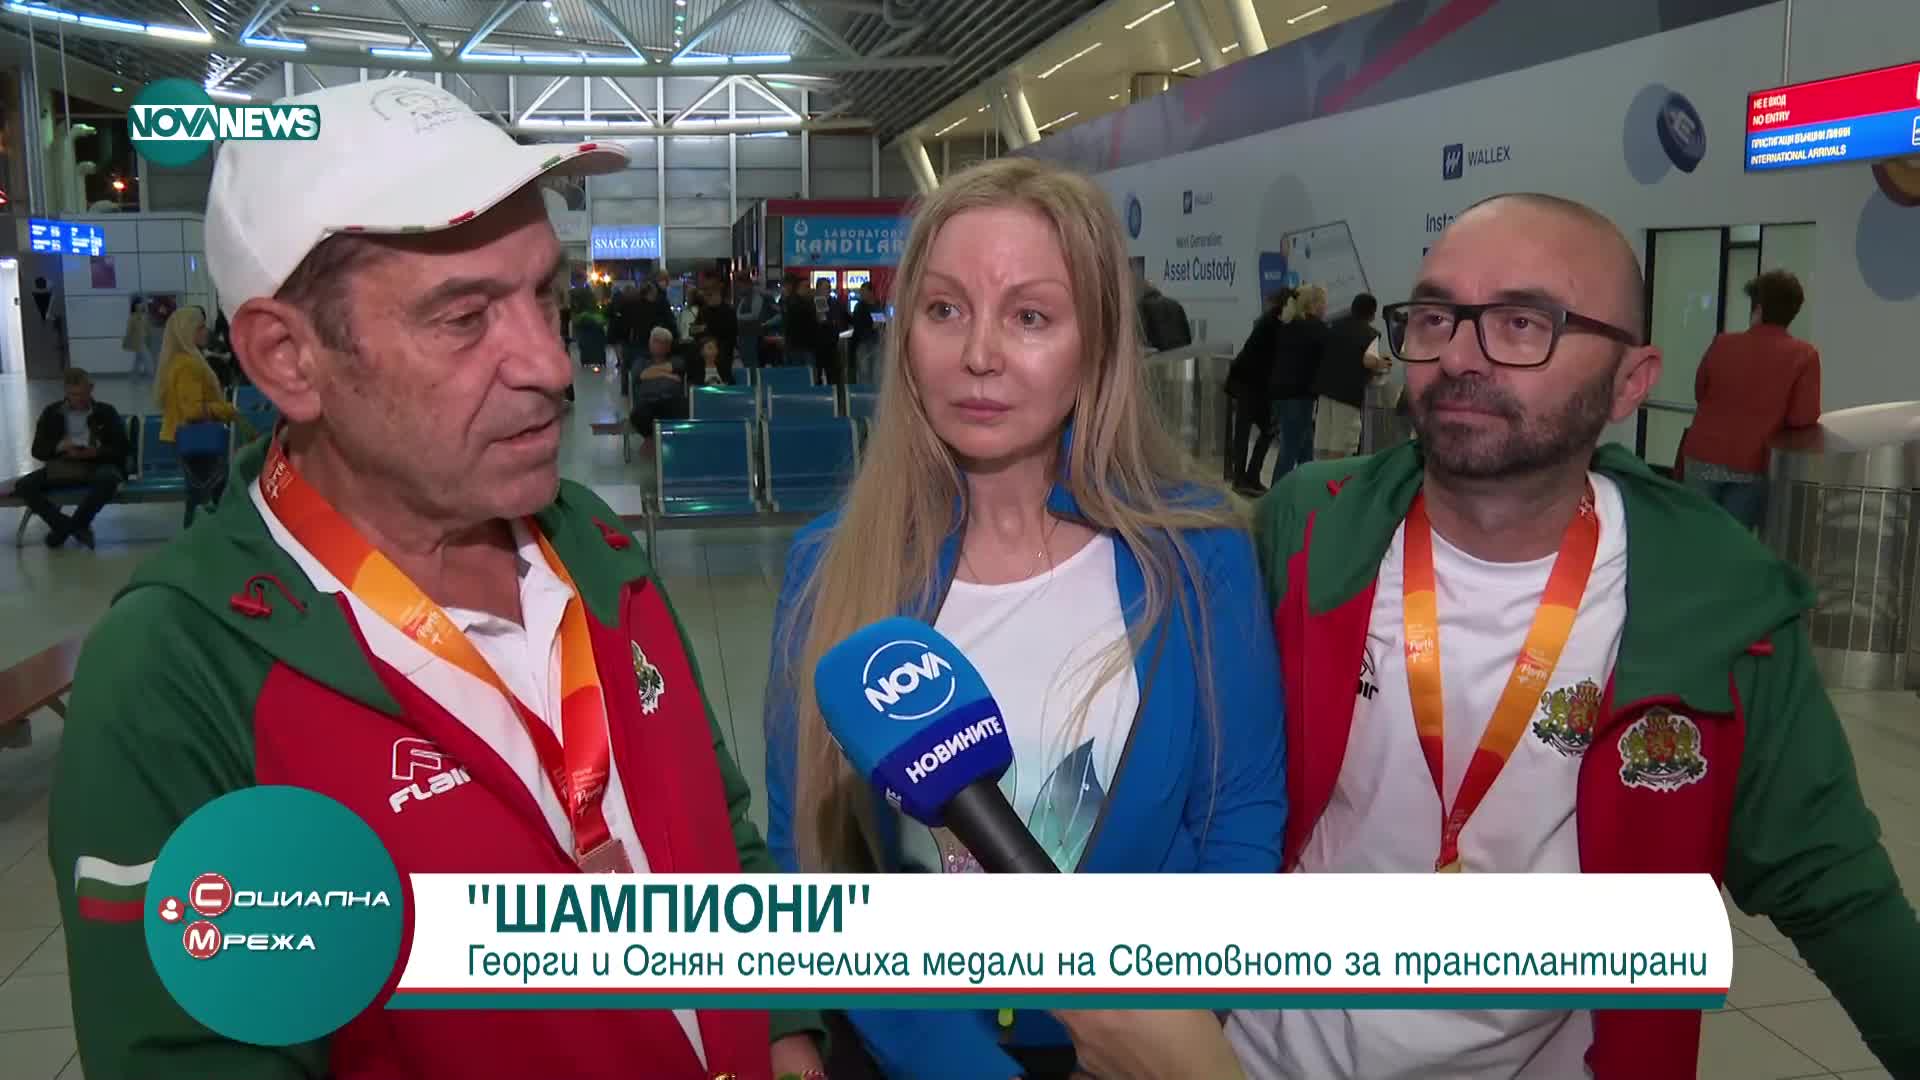 Георги Пеев и Огнян Ганчев в рубриката "Шампиони"